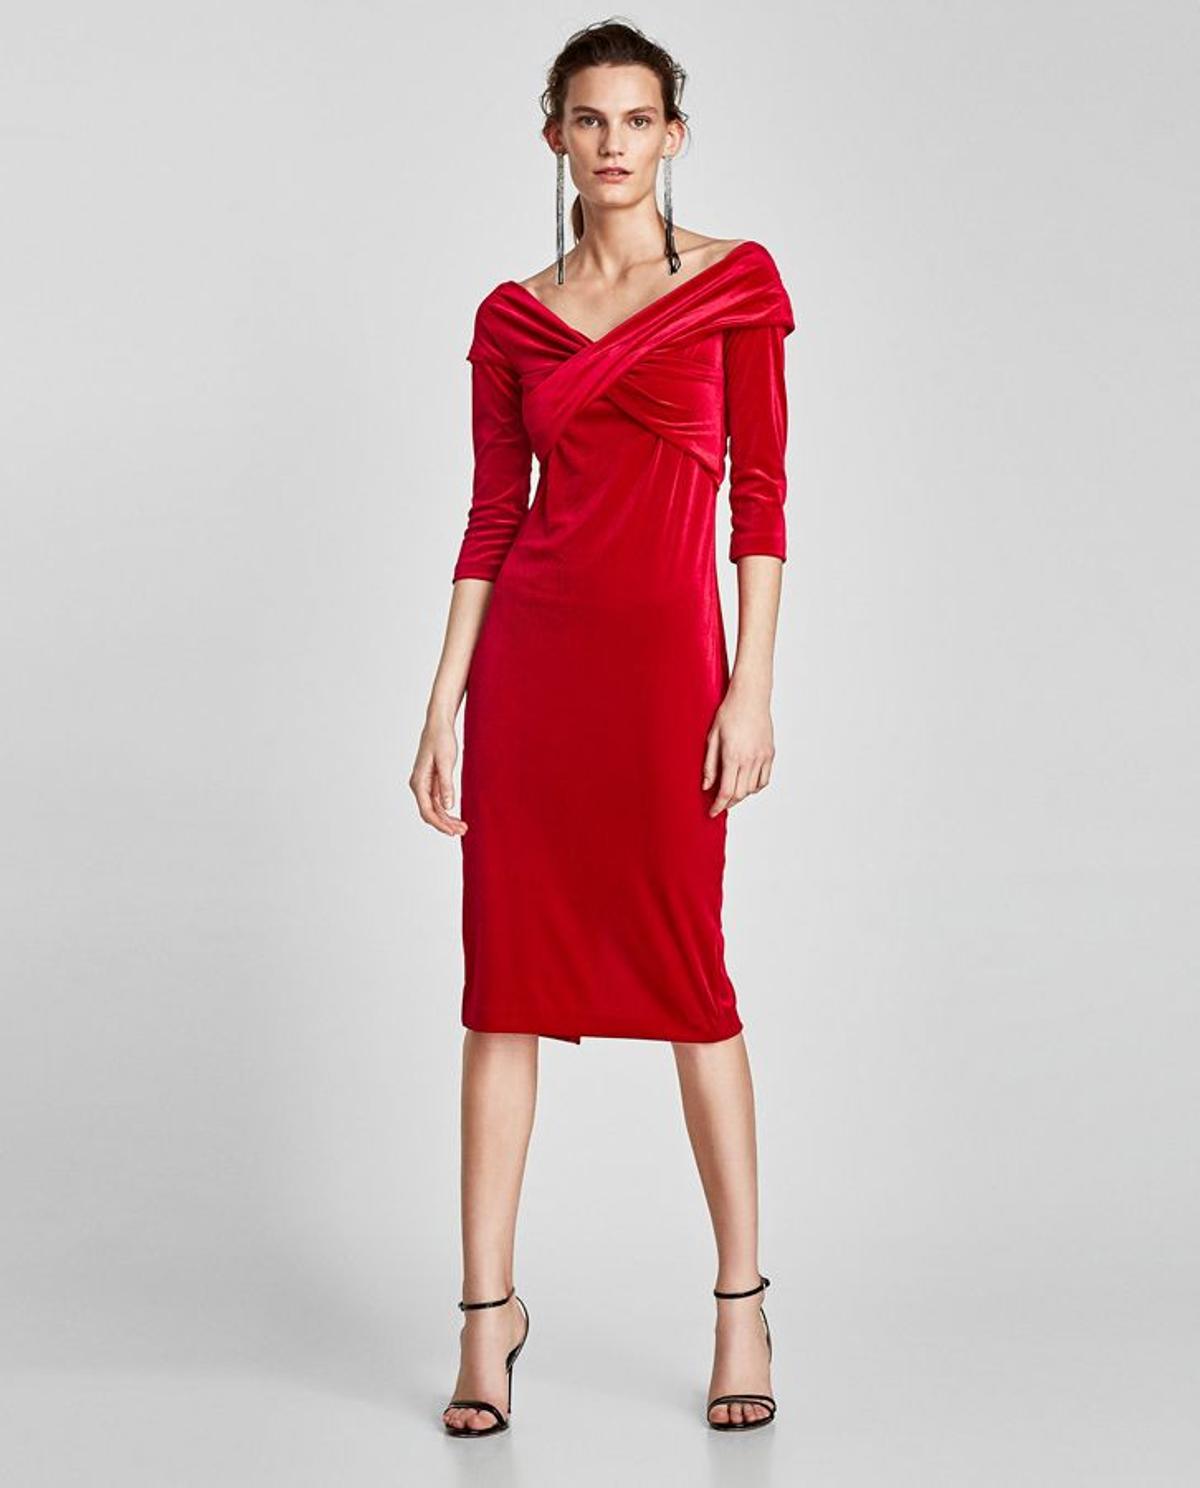 Colección de fiesta de Zara: vestido rojo de terciopelo